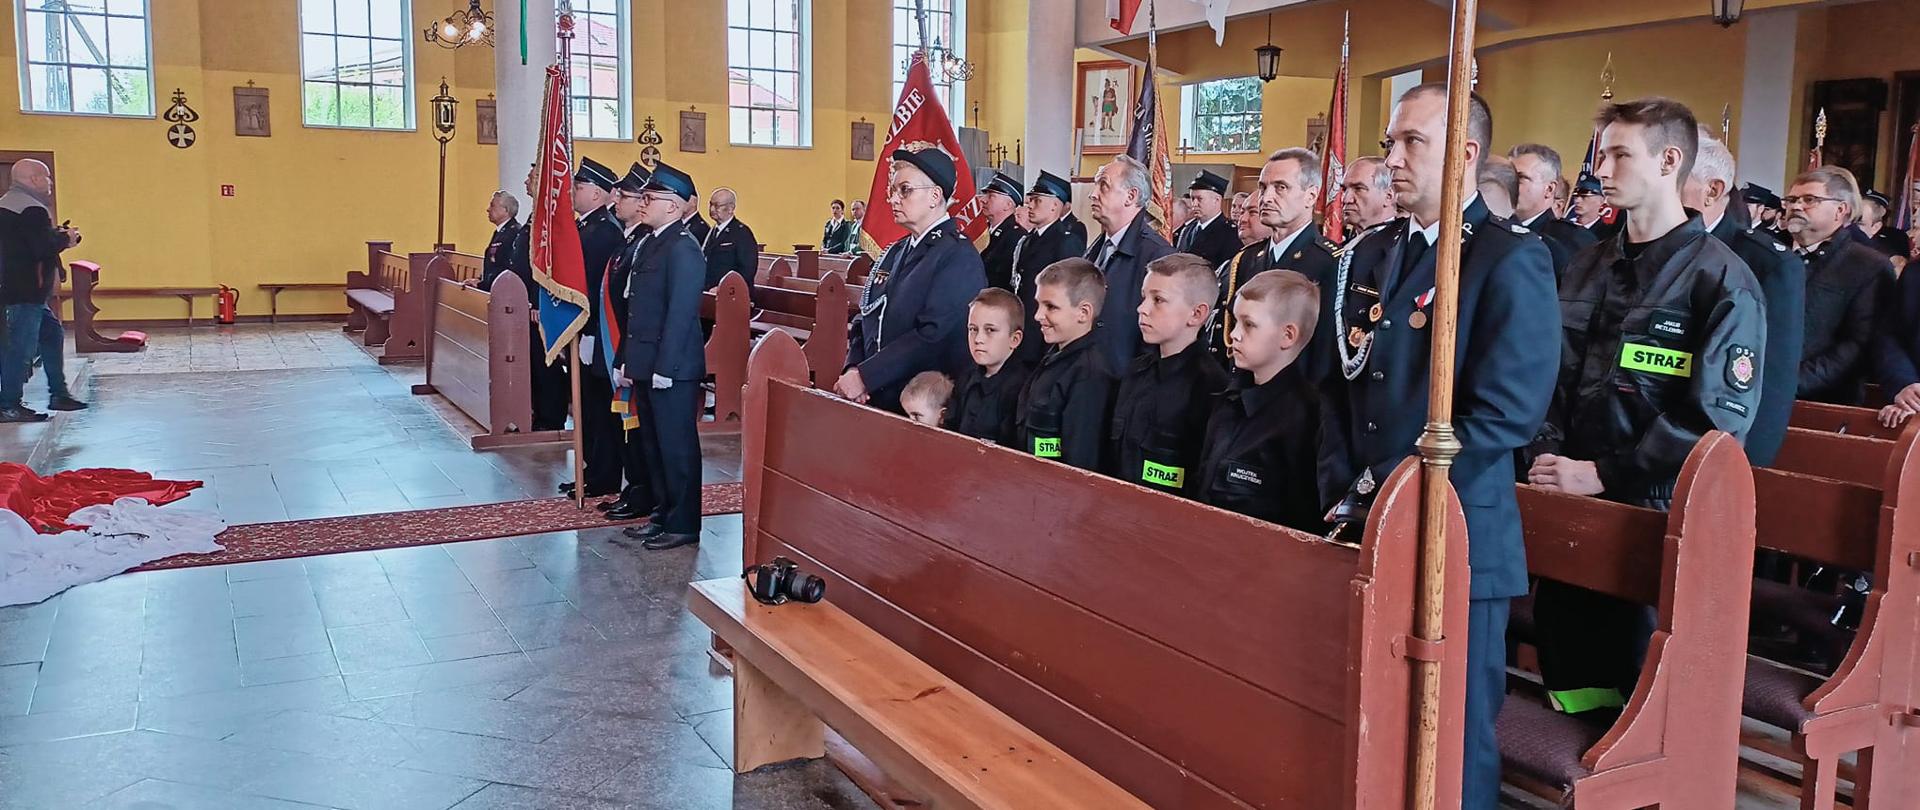 Na zdjęciu uczestnicy uroczystej Mszy Świętej z okazji 110 lecia Ochotniczej Straży Pożarnej w Pruszczu